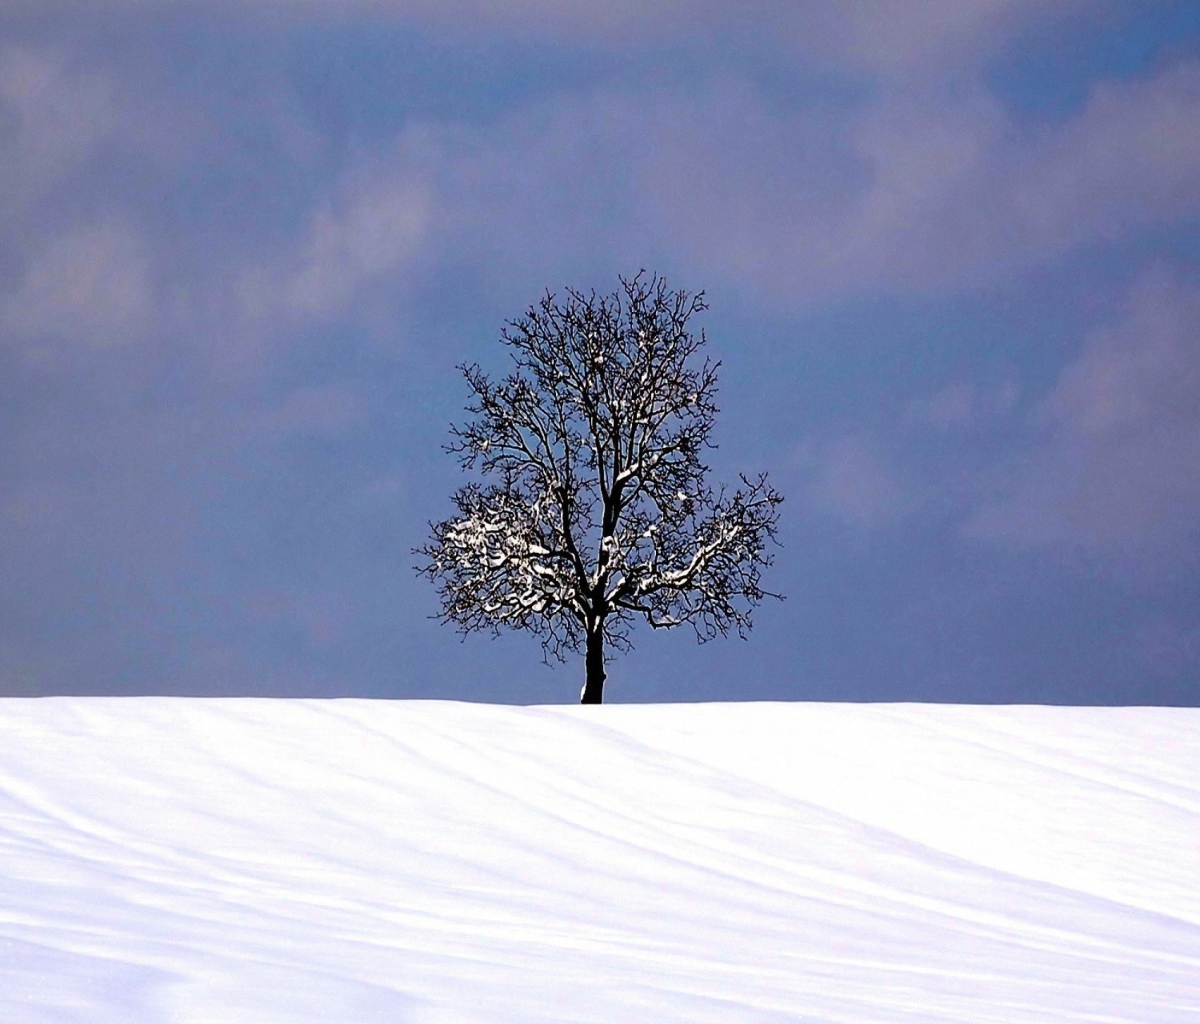 Обои Tree And Snow 1200x1024